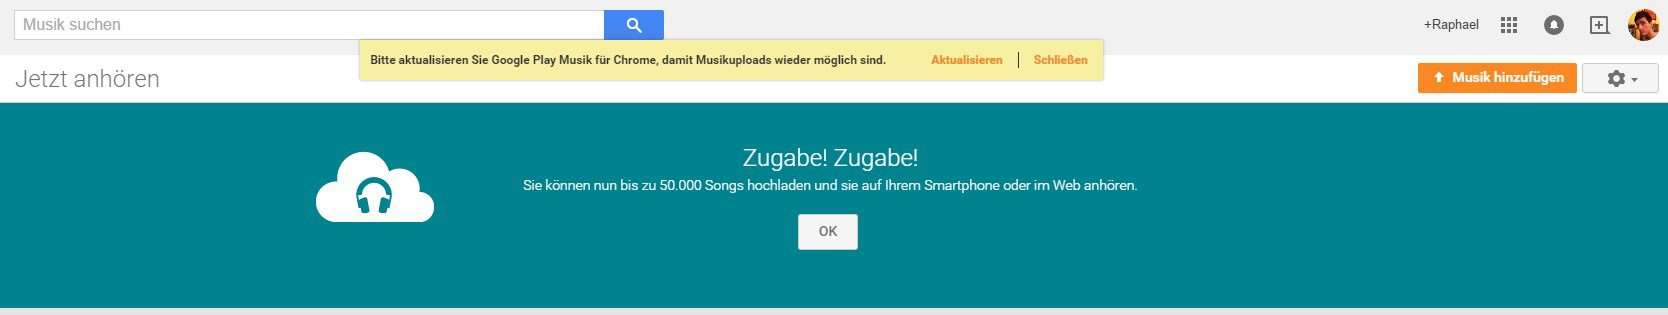 Google Music - Meine Musik - 50.000 Songs hochladen